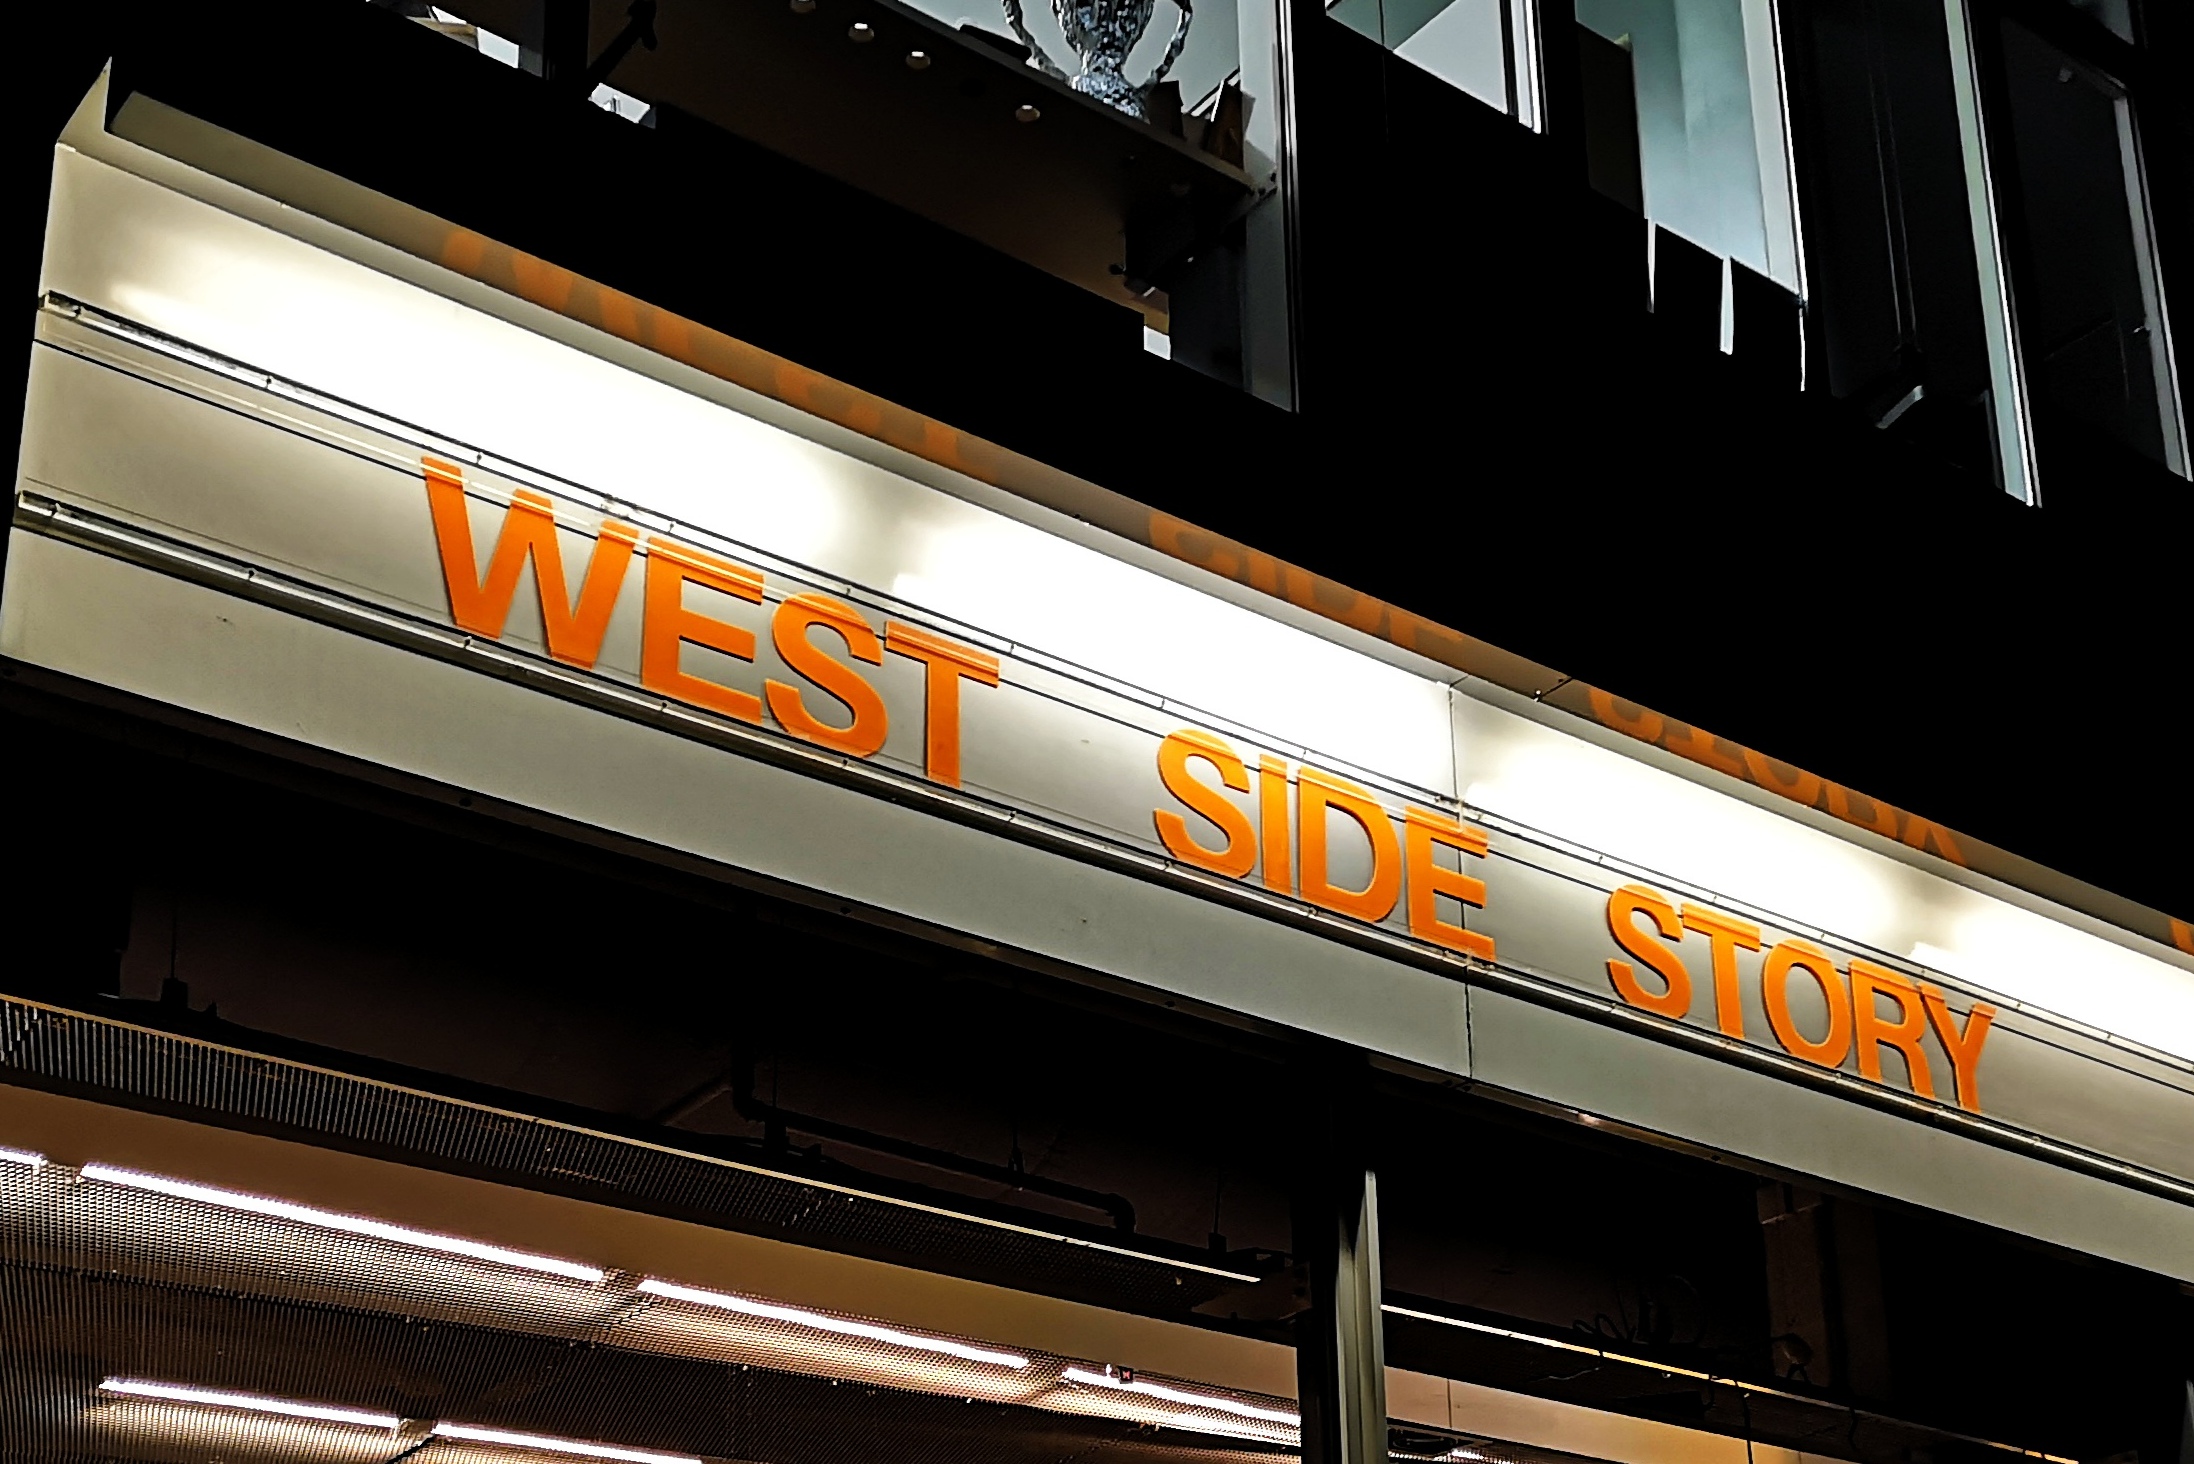 [Neulich im Kino] West Side Story in der Neuverfilmung von Steven Spielberg